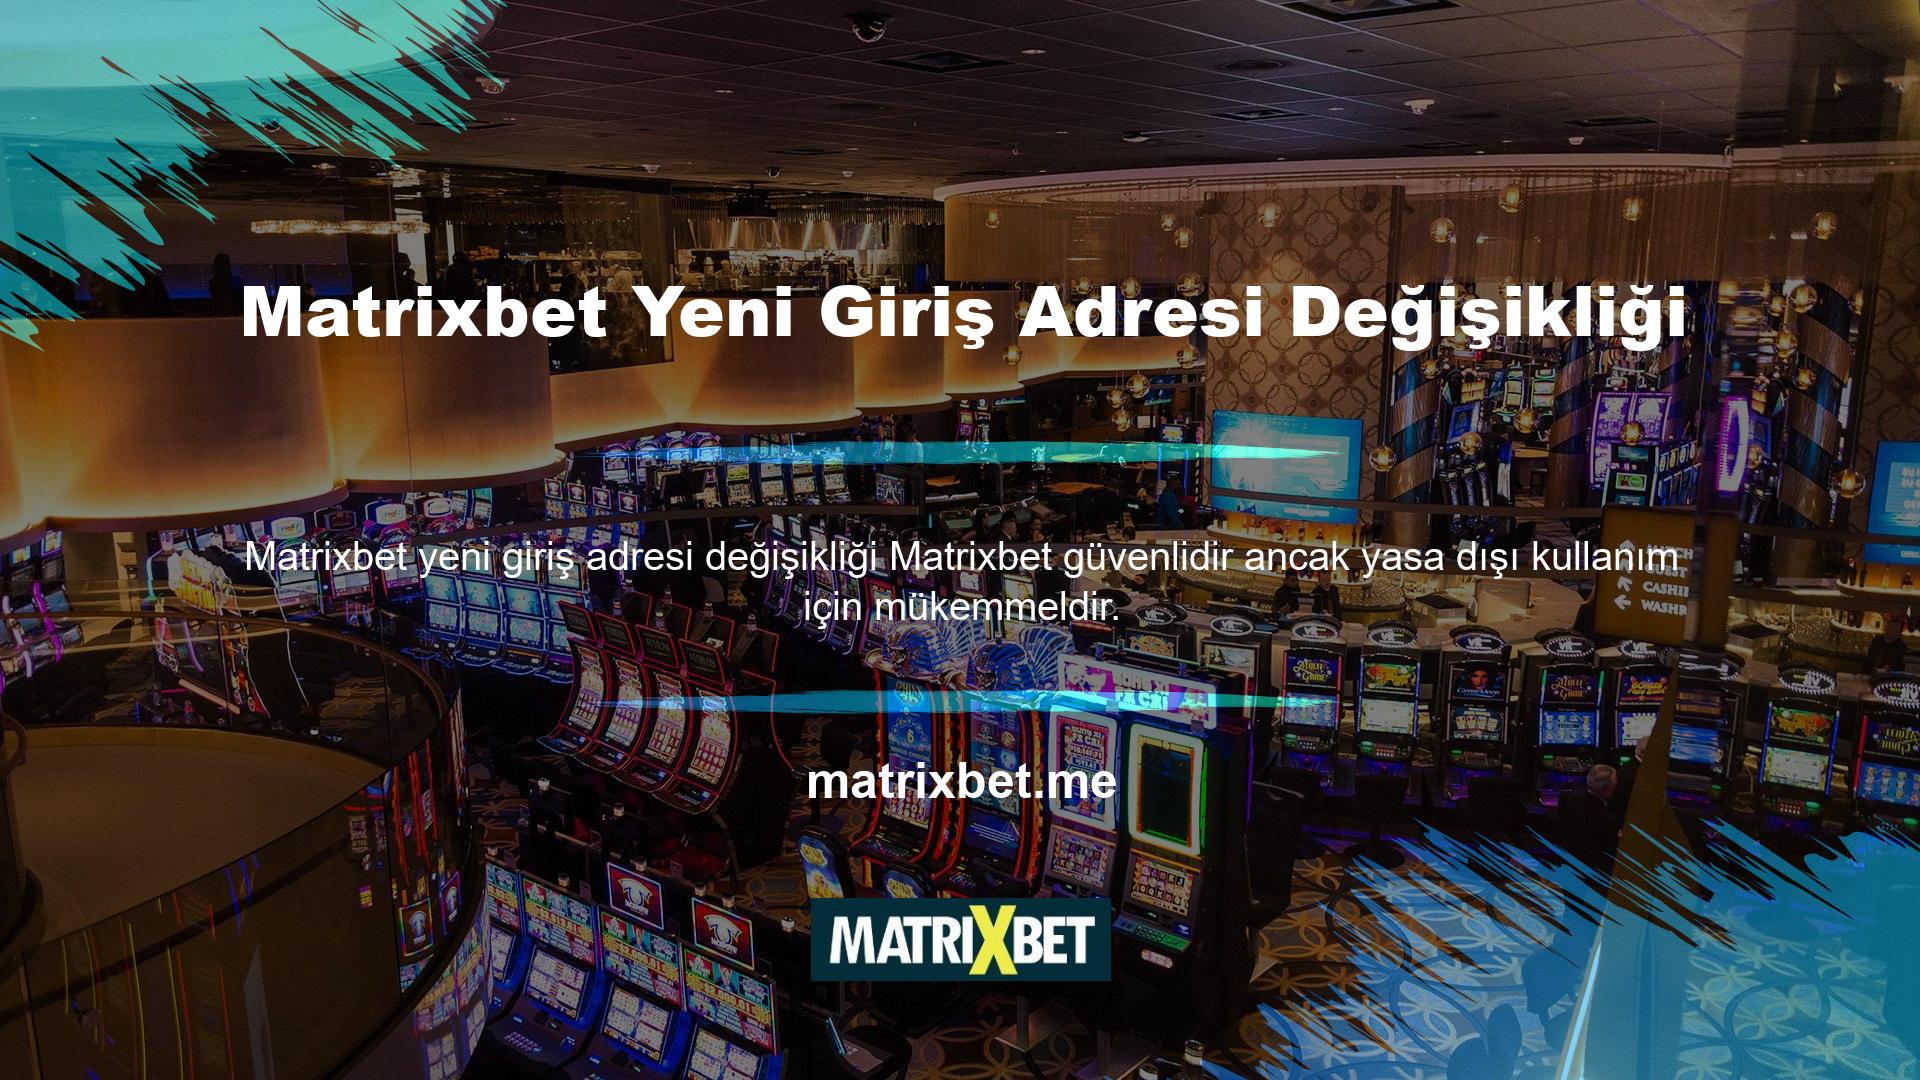 Casino oyunlarında yasa dışı olarak kullanılmasına rağmen Türkiye'de yasaktır